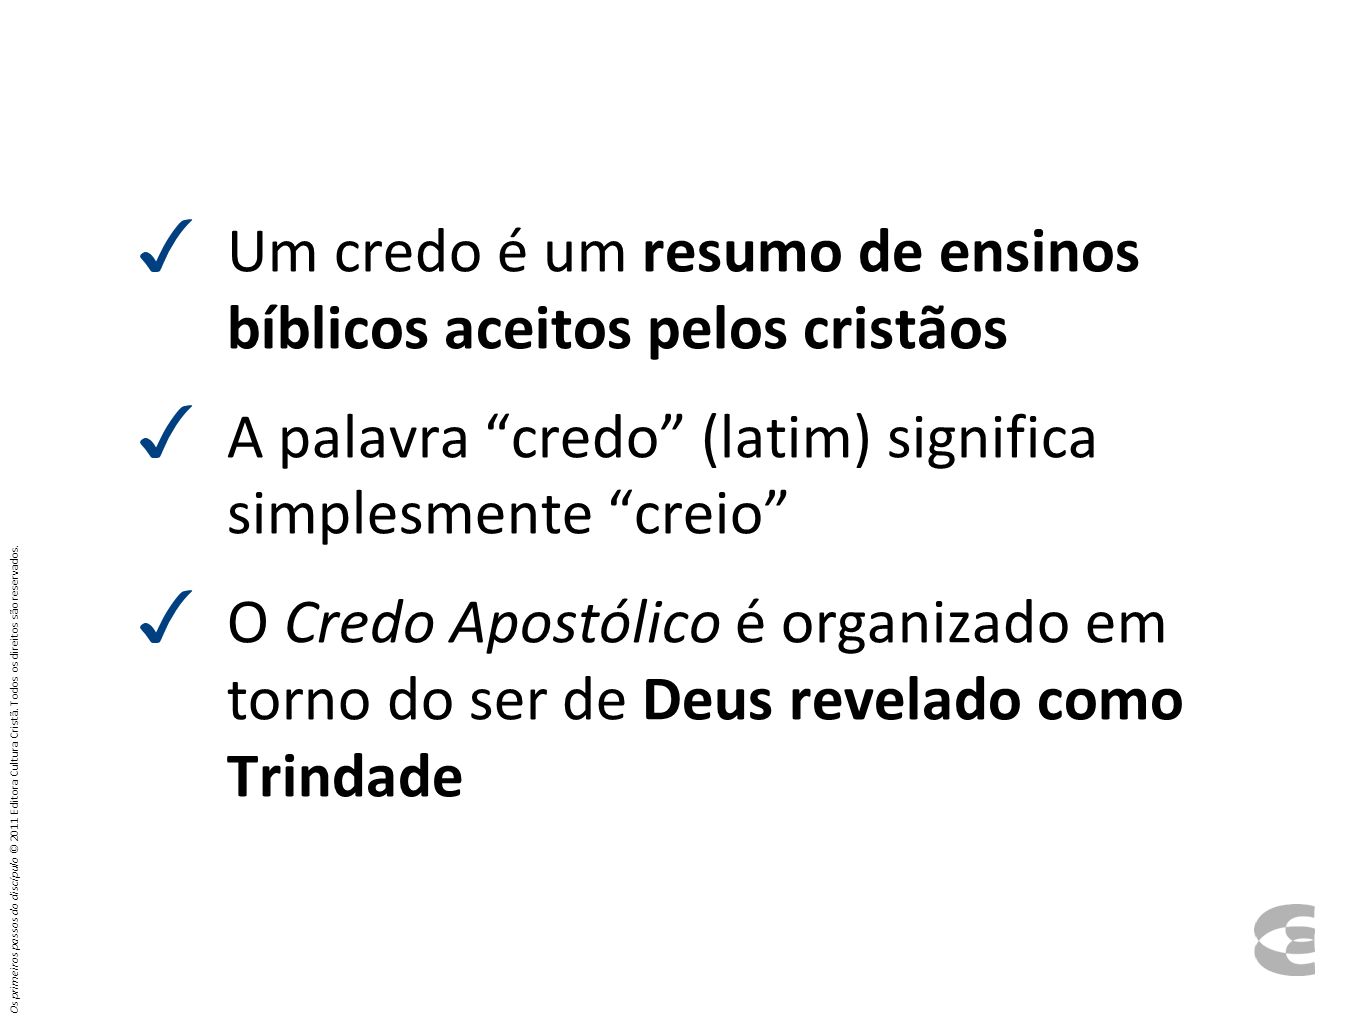 Um credo é um resumo de ensinos bíblicos aceitos pelos cristãos